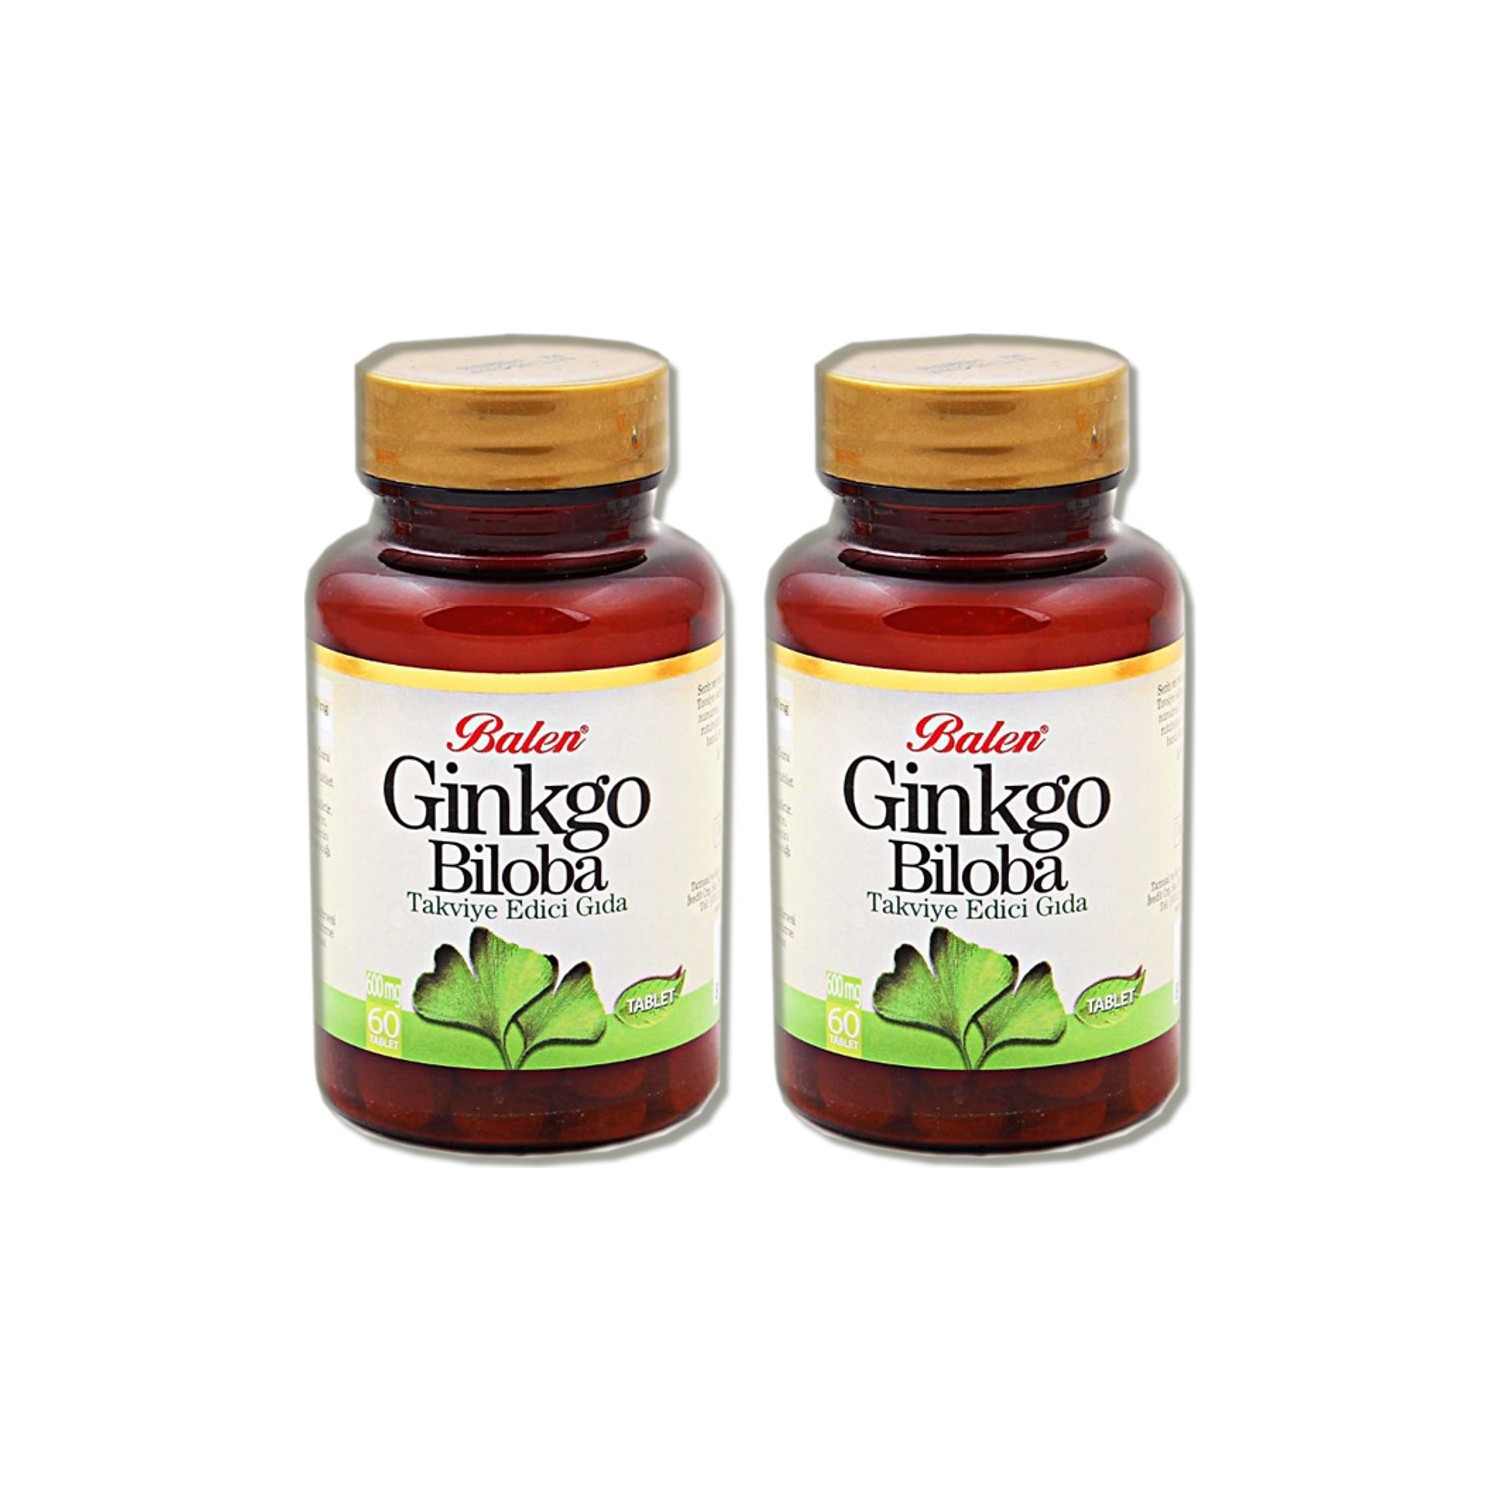 Активная добавка Balen Ginkgo Biloba Capsules, 60 капсул, 600 мг, 2 штуки now ginkgo biloba 60mg 60 капс